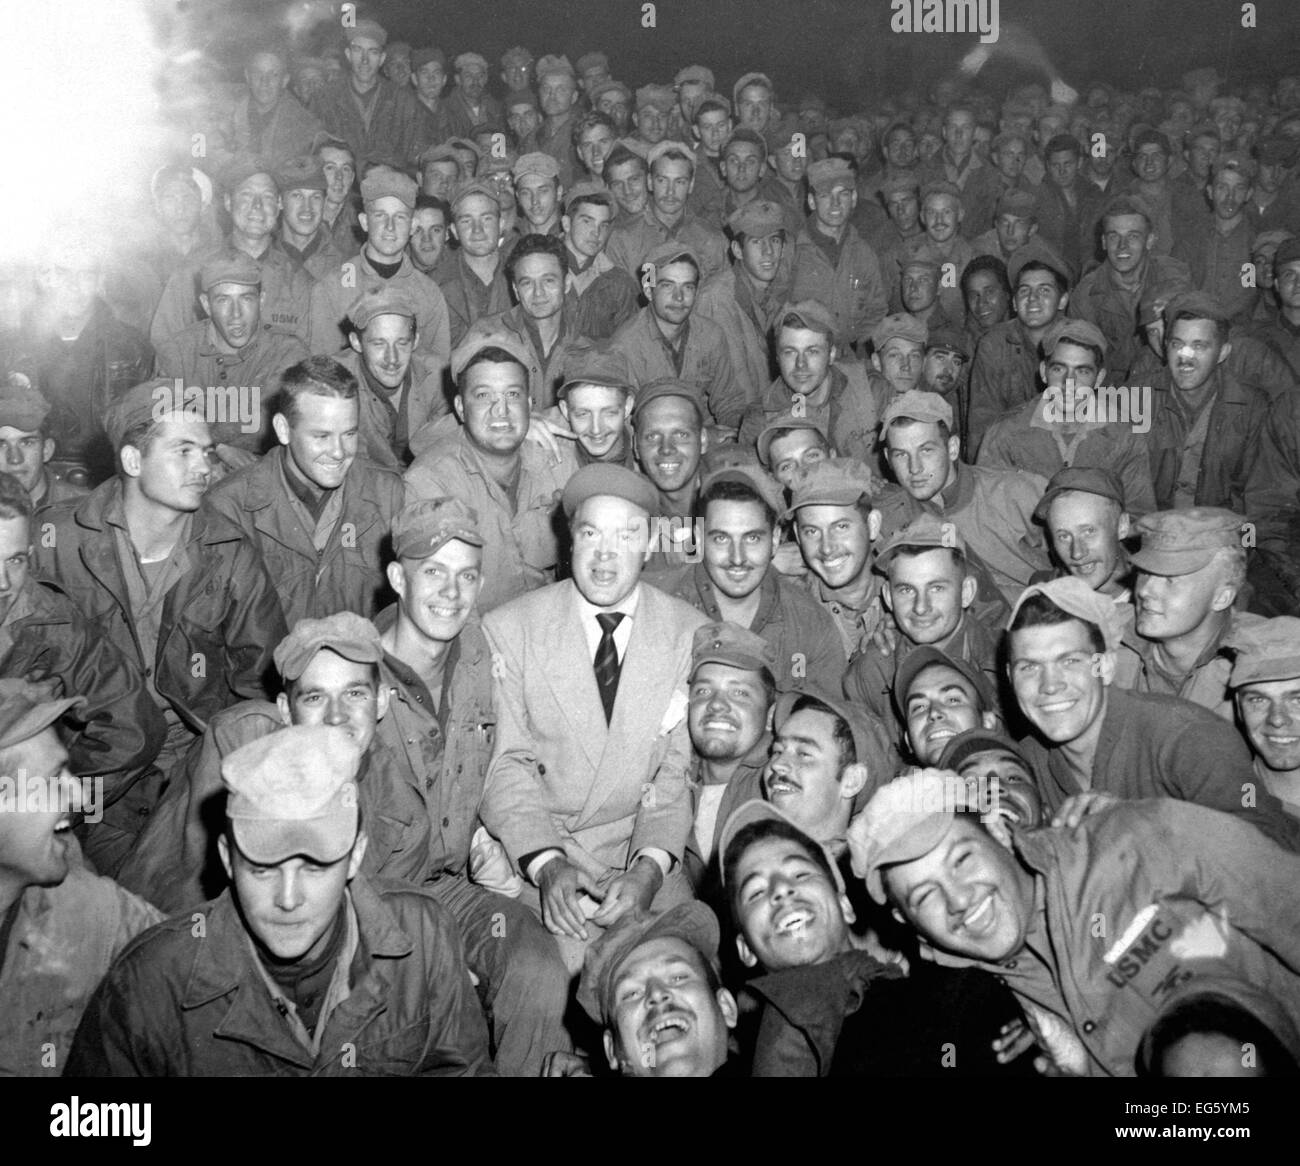 Koreanischer Krieg (1950-1953) Bob Hope sitzt mit Männern des X. Korps beobachten seiner Truppe zu Womsan, Korea zu unterhalten.  26. Oktober 1950.  Foto: CPL. Alex Klein.  (US Army)  NARA-DATEI # 111-SC-351586 KRIEG & KONFLIKT BUCHEN #: 1469 Stockfoto